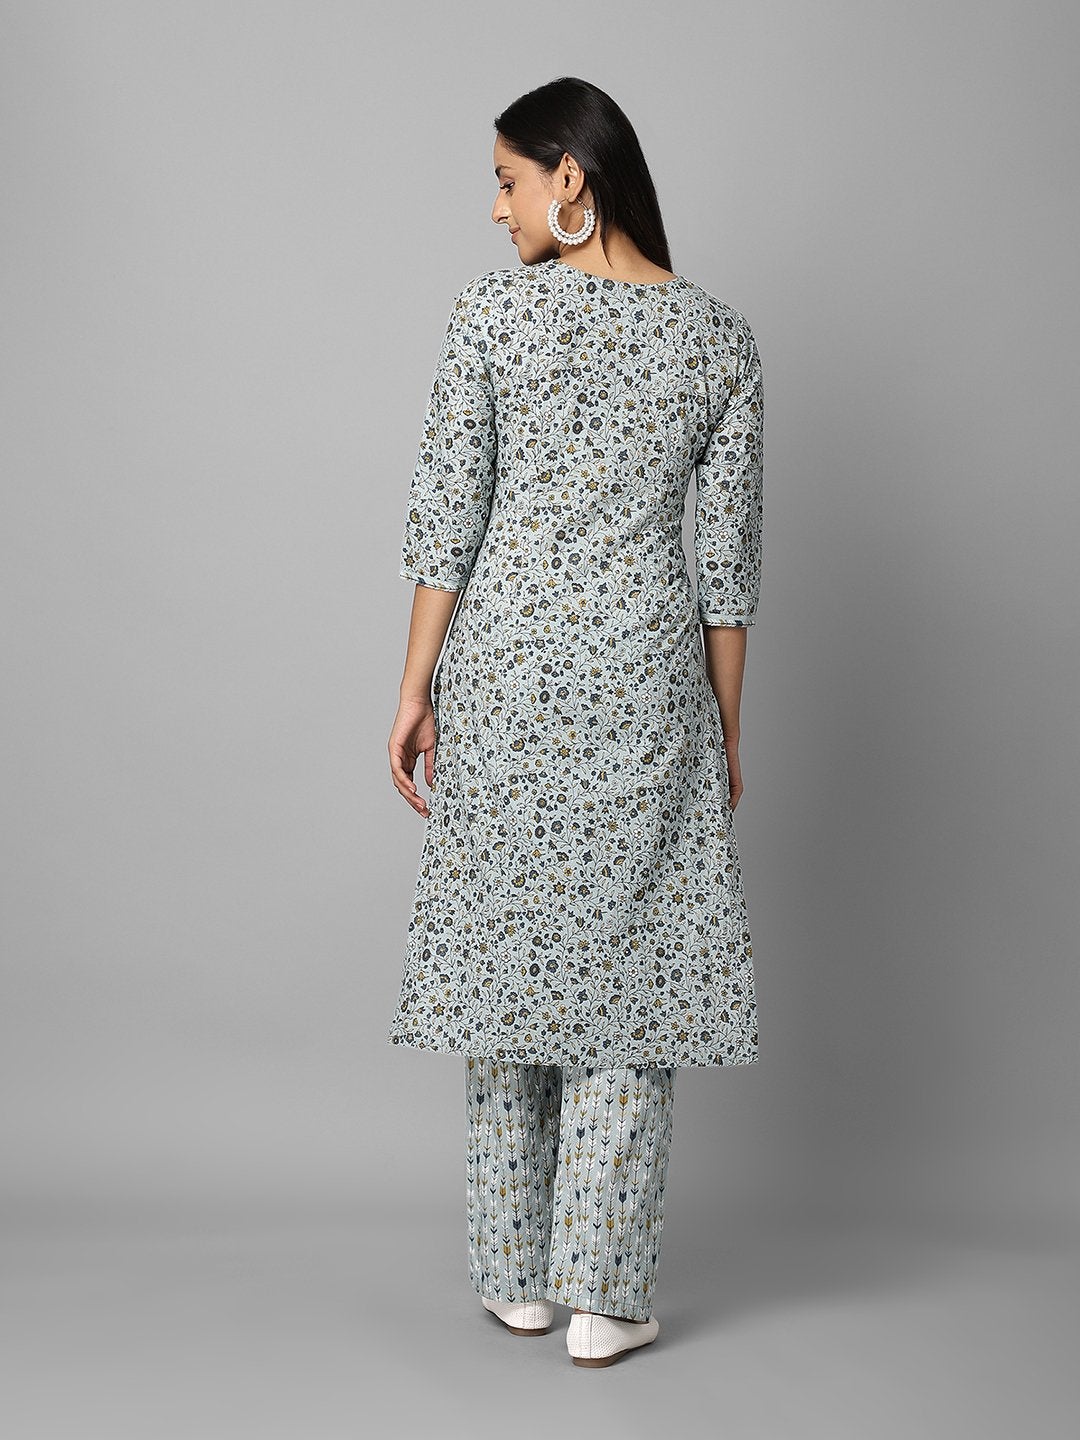 Women's Grey Floral Printed Side Slit Straight Kurta Palazzo Set - Azira